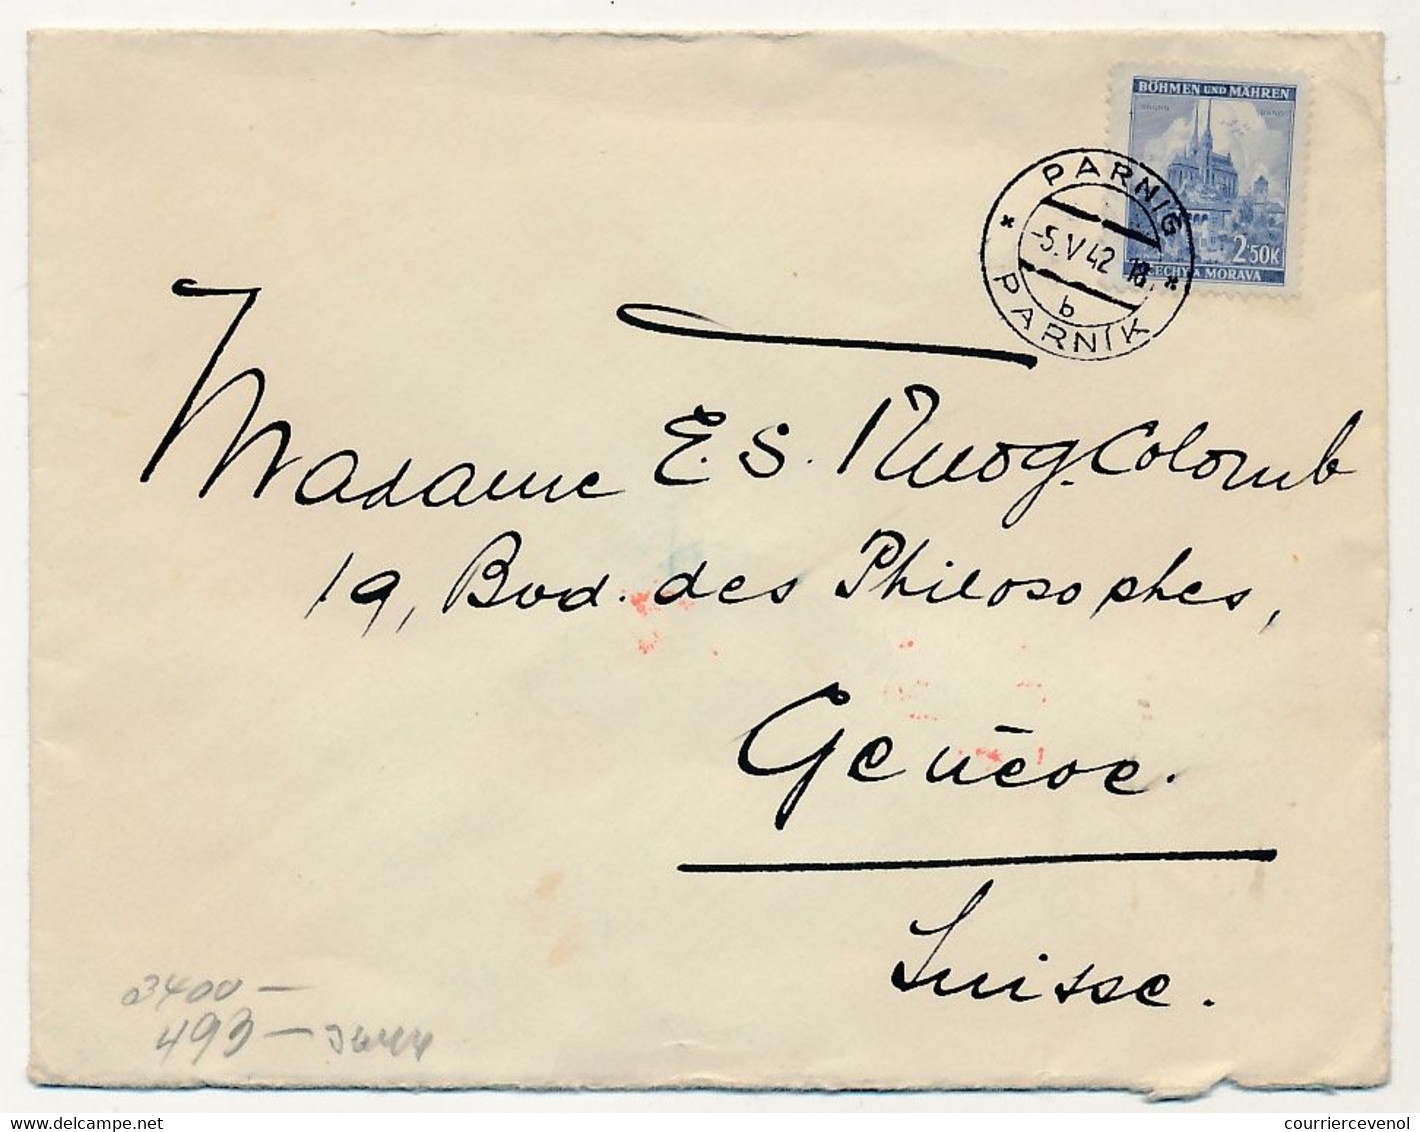 BOHEME MORAVIE - 4 enveloppes + 4 entiers postaux (CP) depuis Böhmisch -Trübau et Parnis, pour Genève - 1941 à 1944